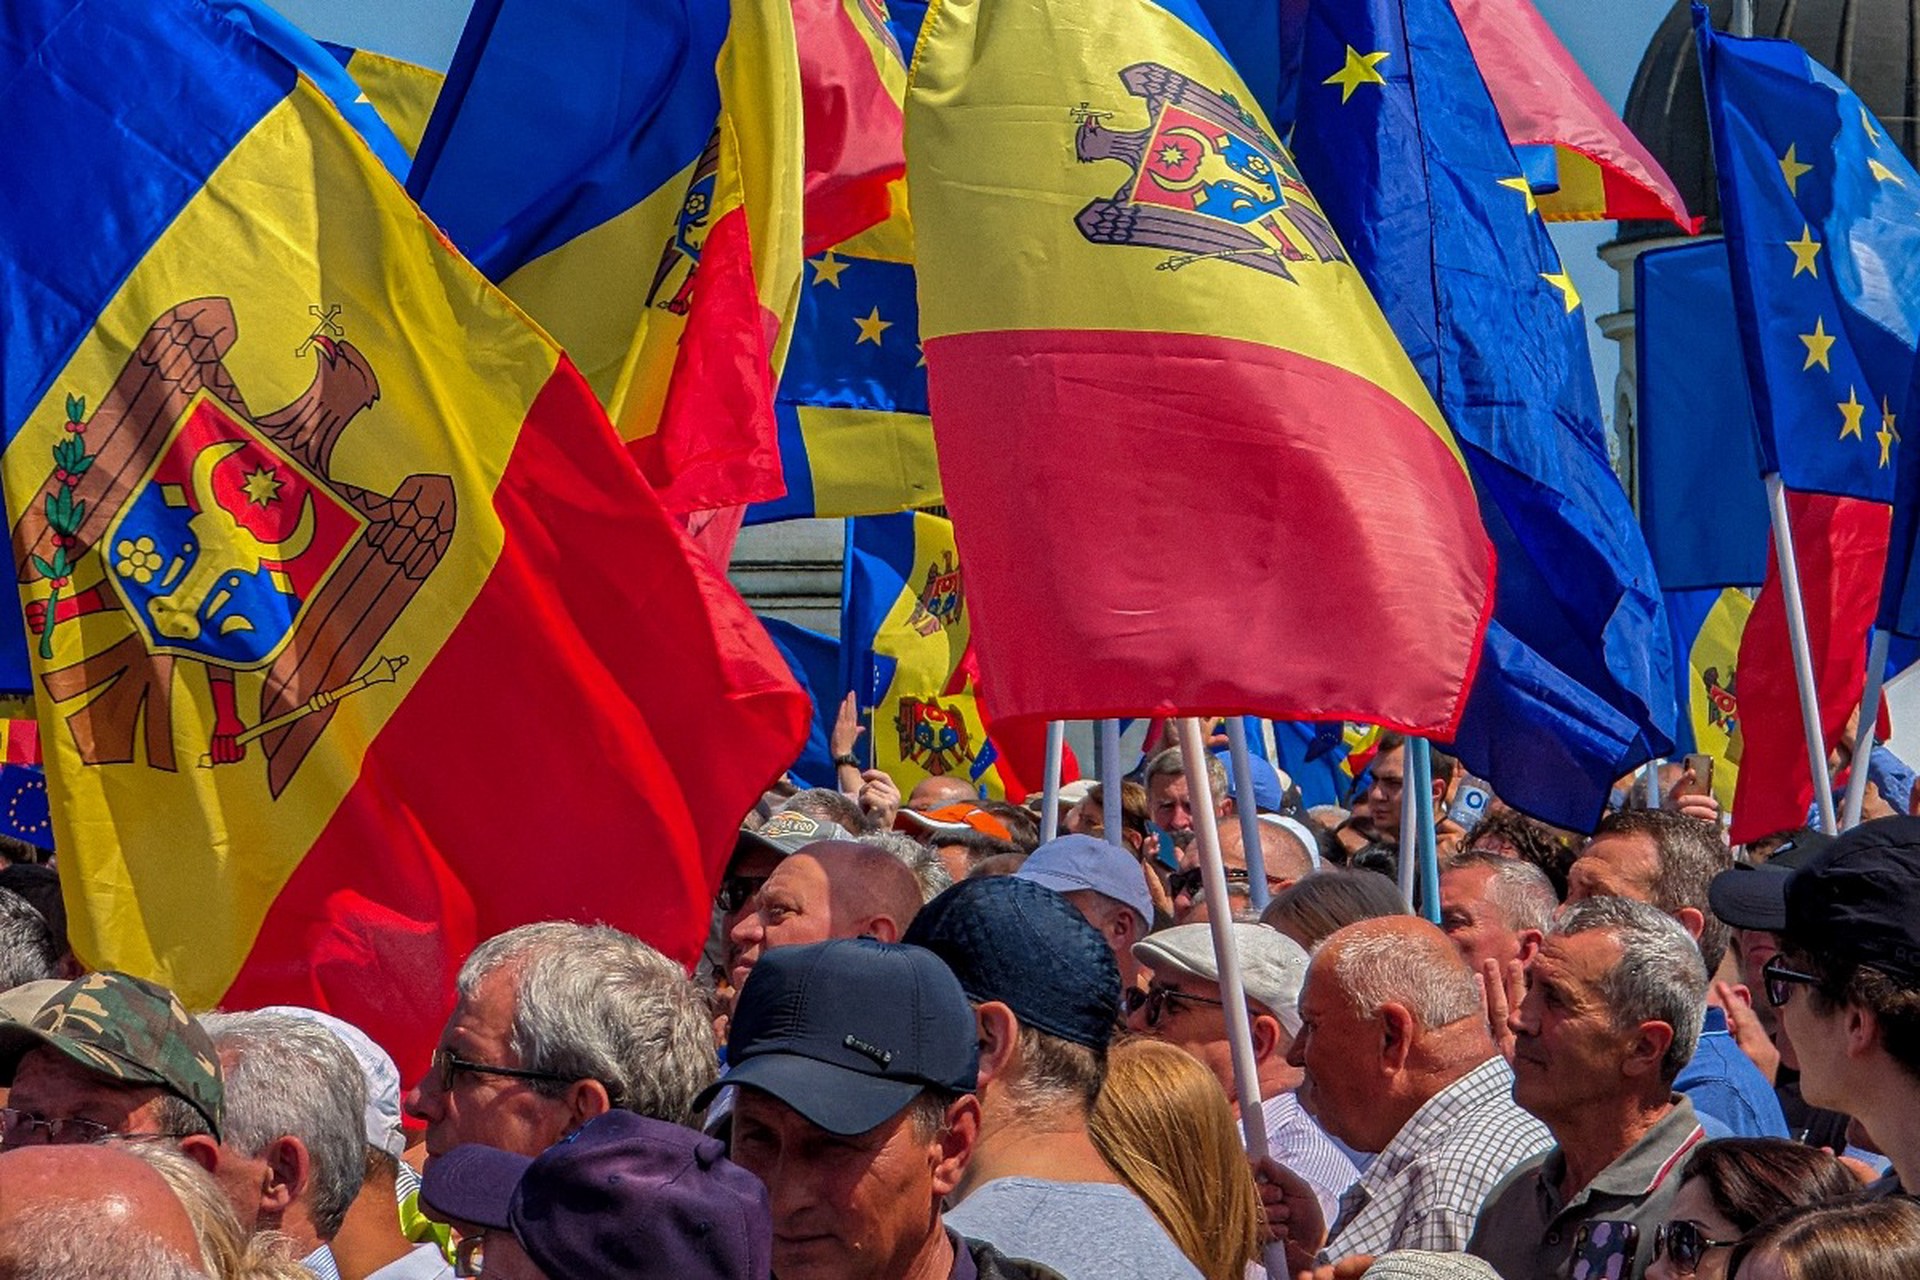 Шор: ЕС поставляет оружие в Молдавию и хочет развязать войну на её территории